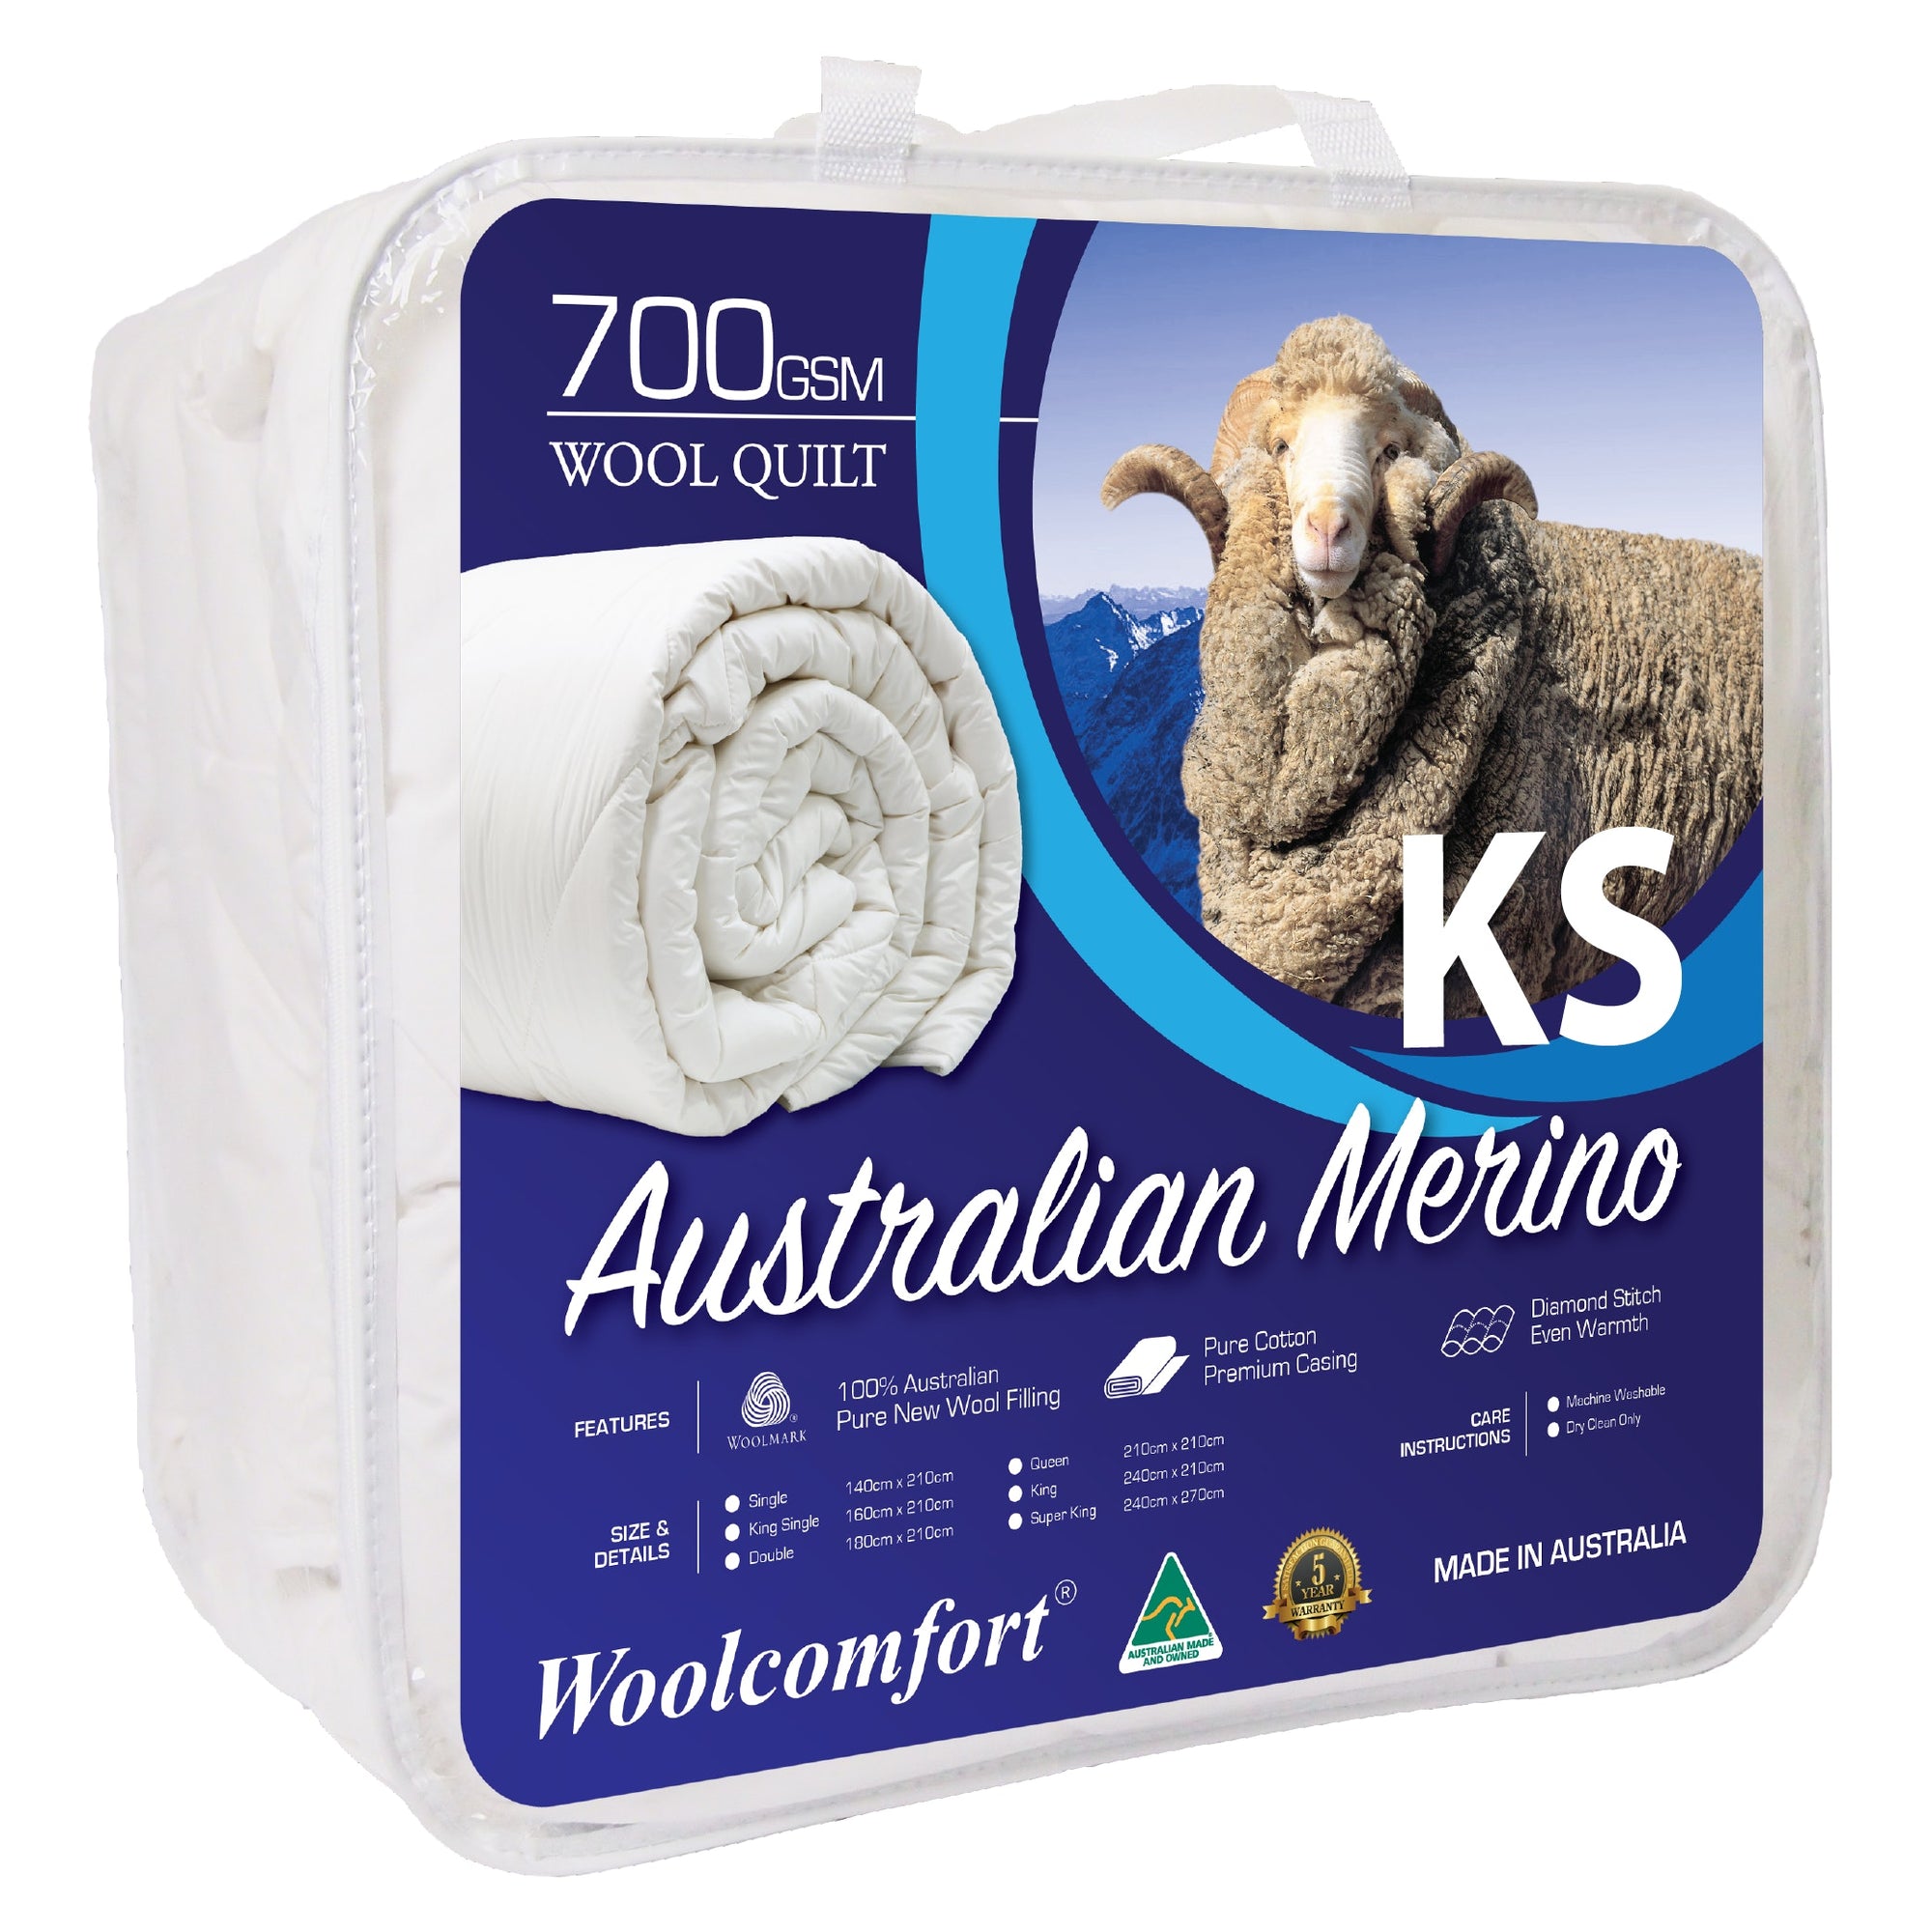 Woolcomfort Aus Made Merino Wool Quilt 700GSM - King Single Size (160x210cm)